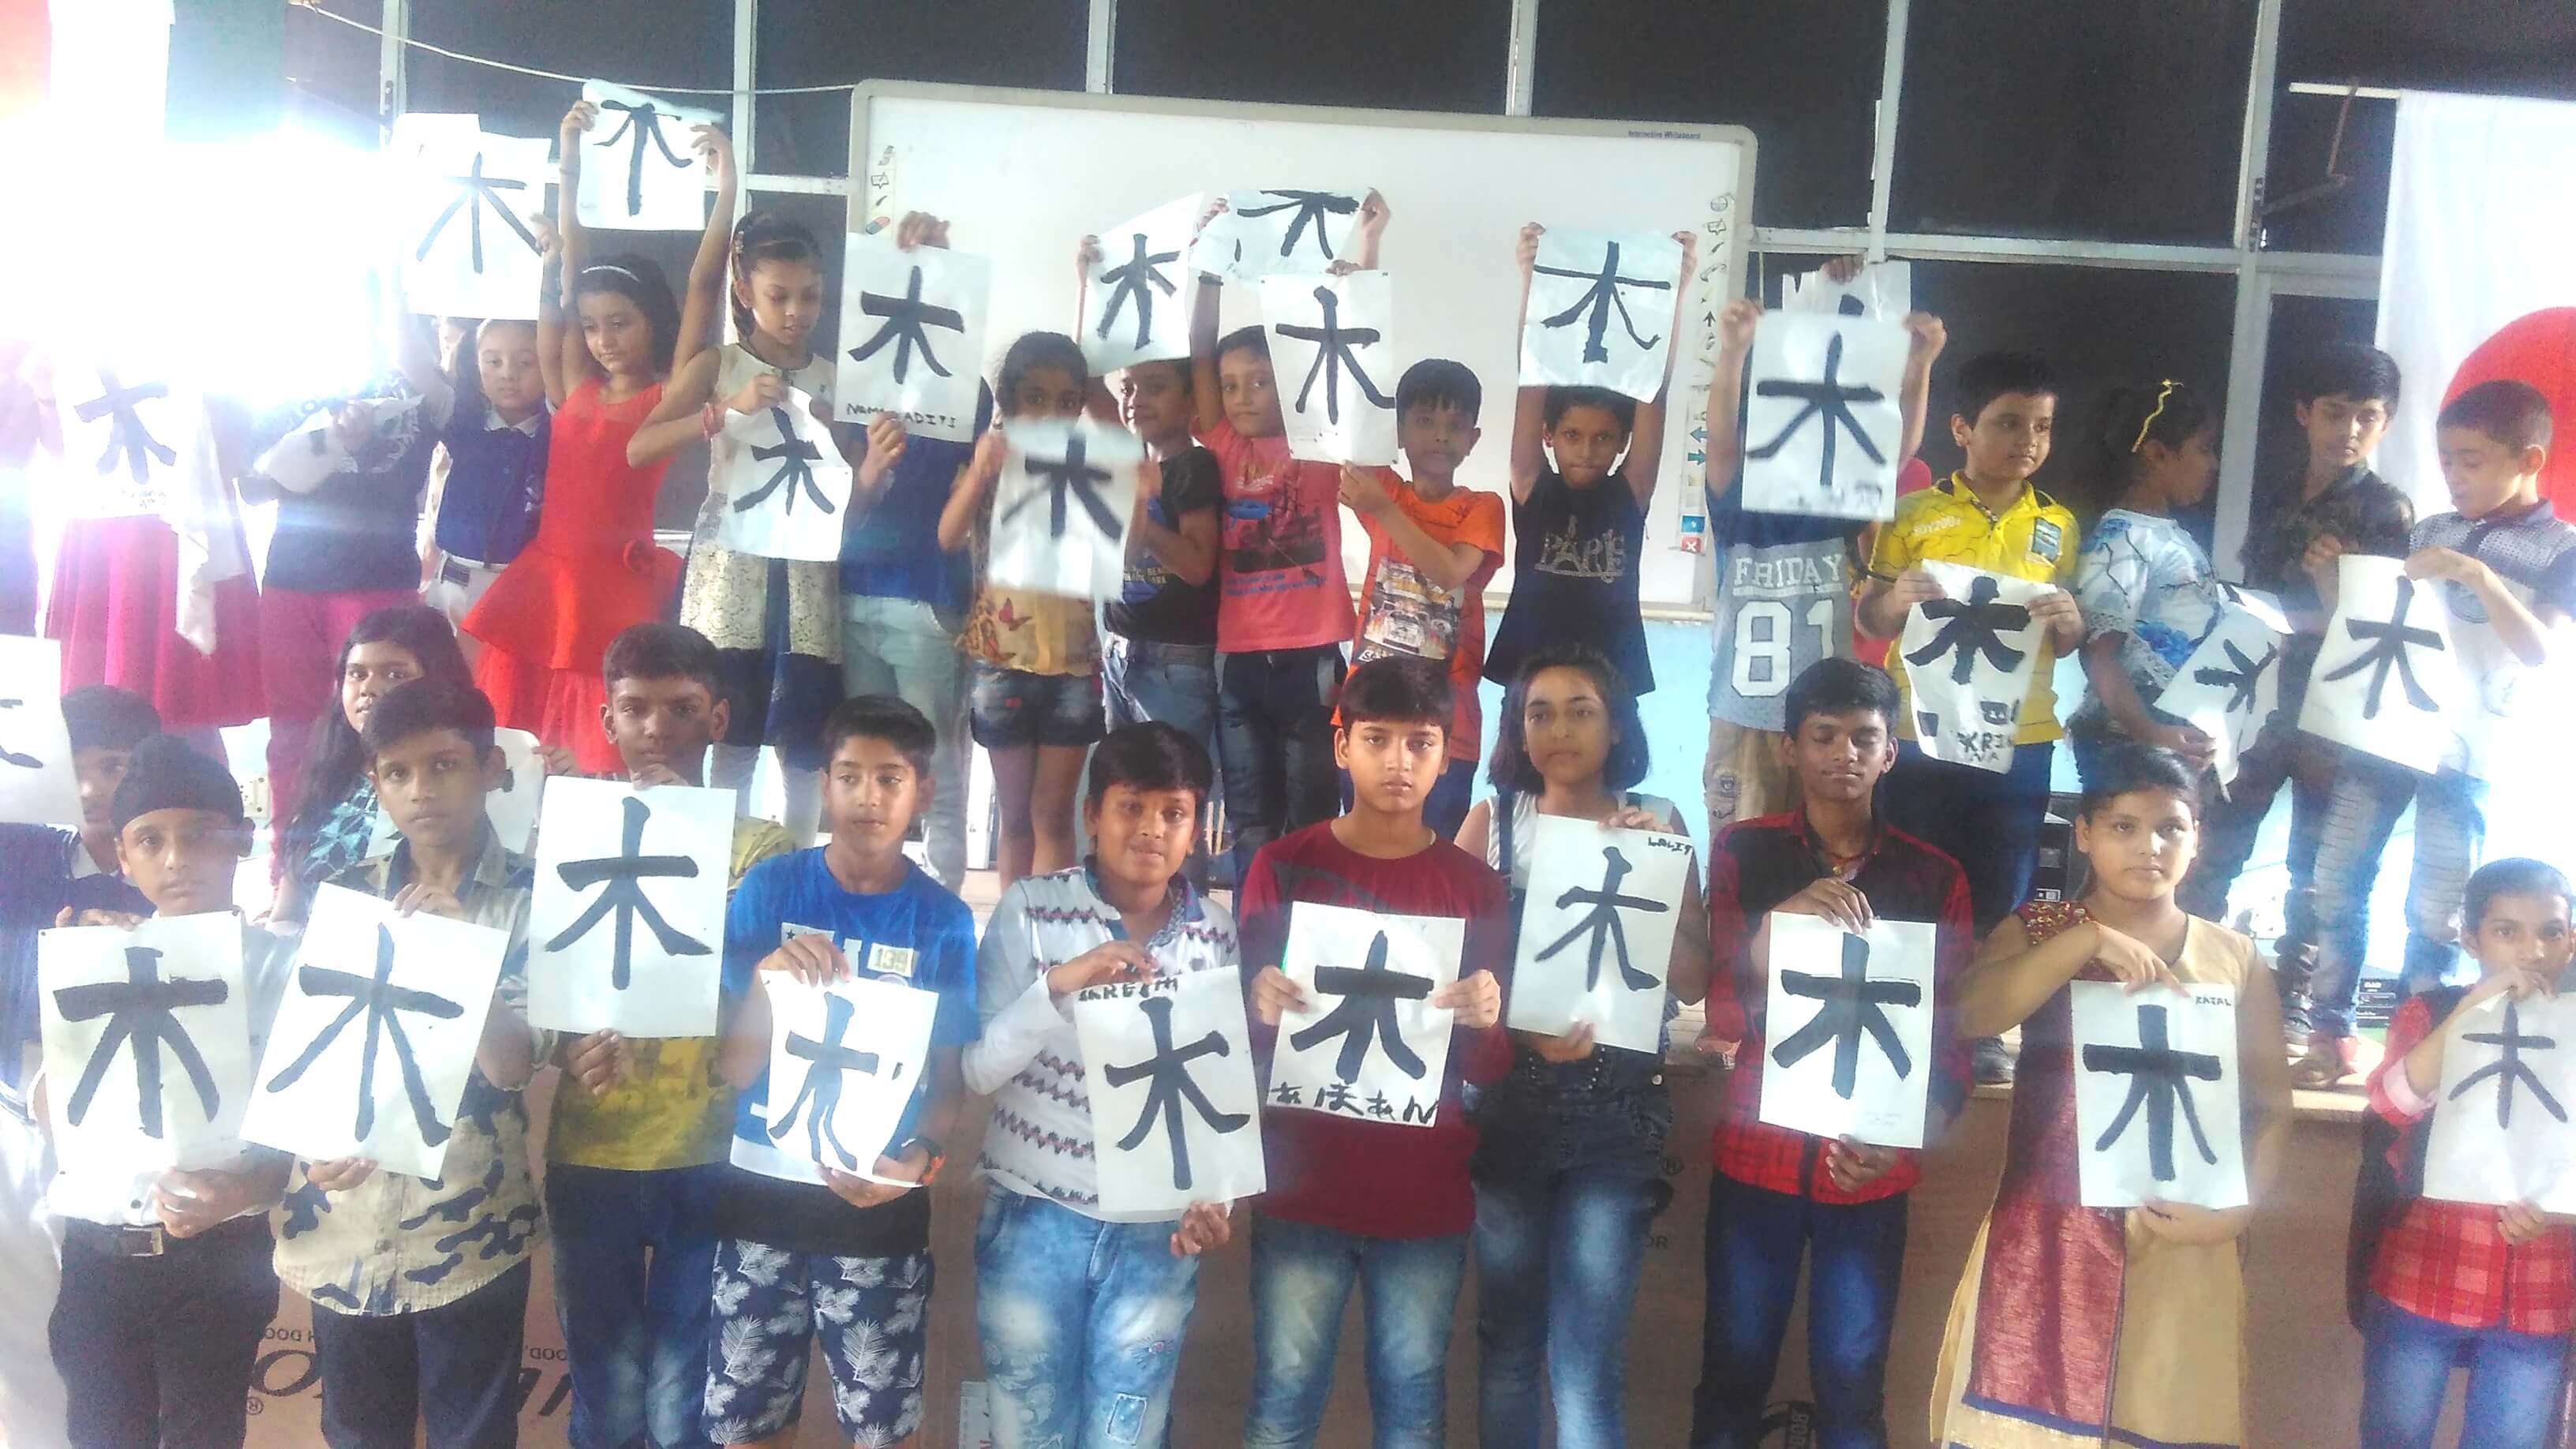 मुनि स्कूल के छात्रों ने सीखी जापान की कैलीग्राफी